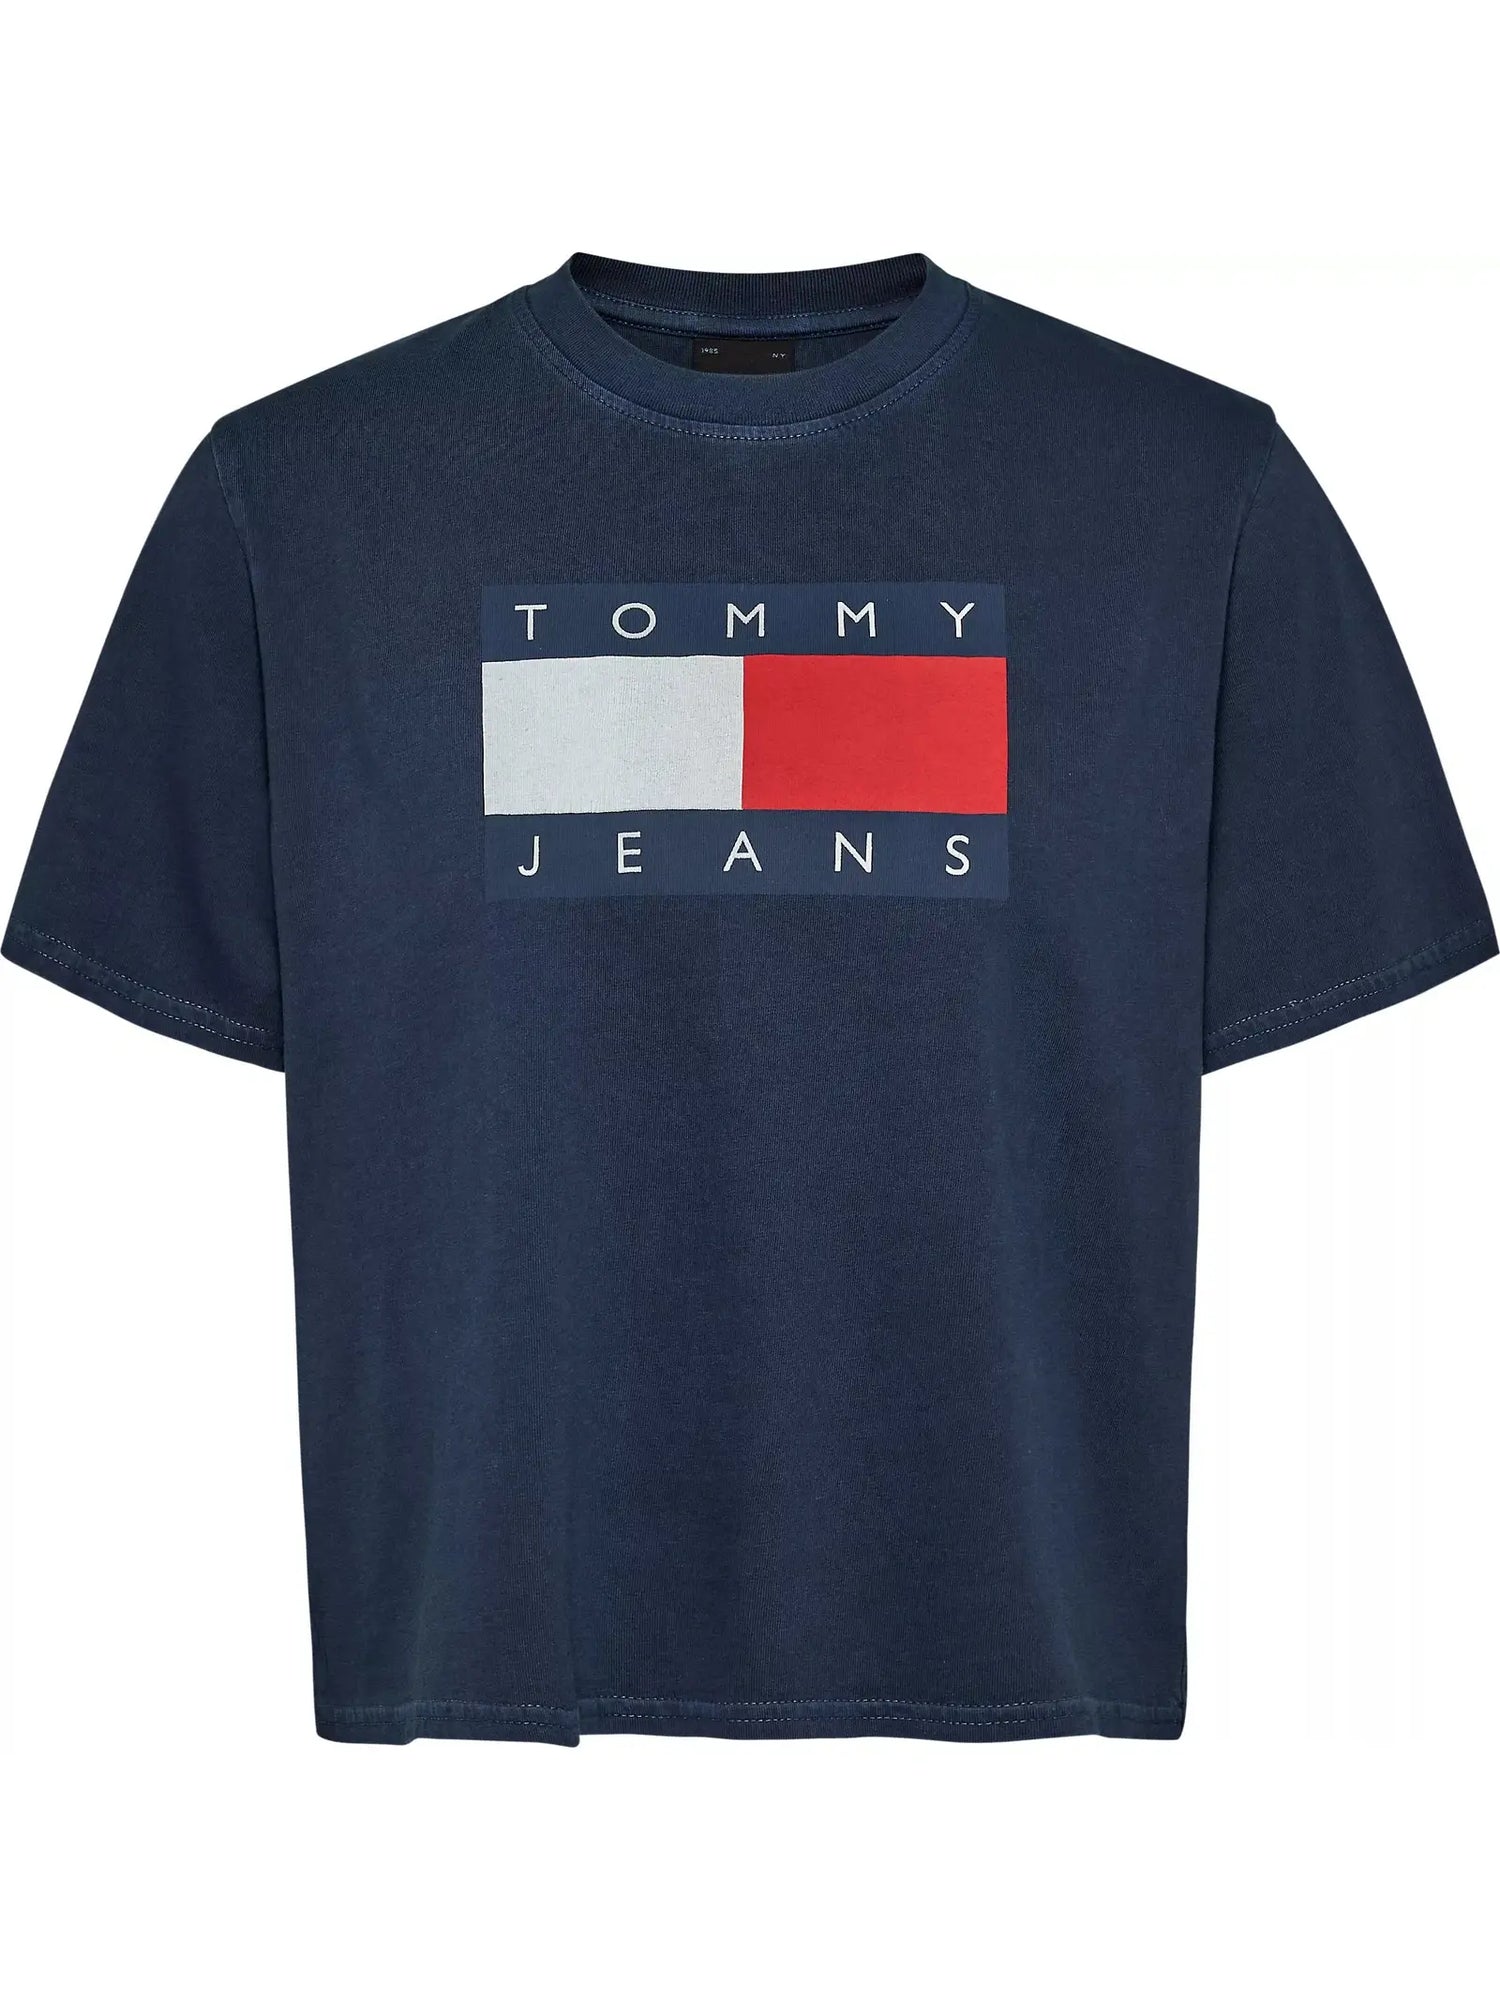 TJW boxy tommy flag t-shirt - dark night navy